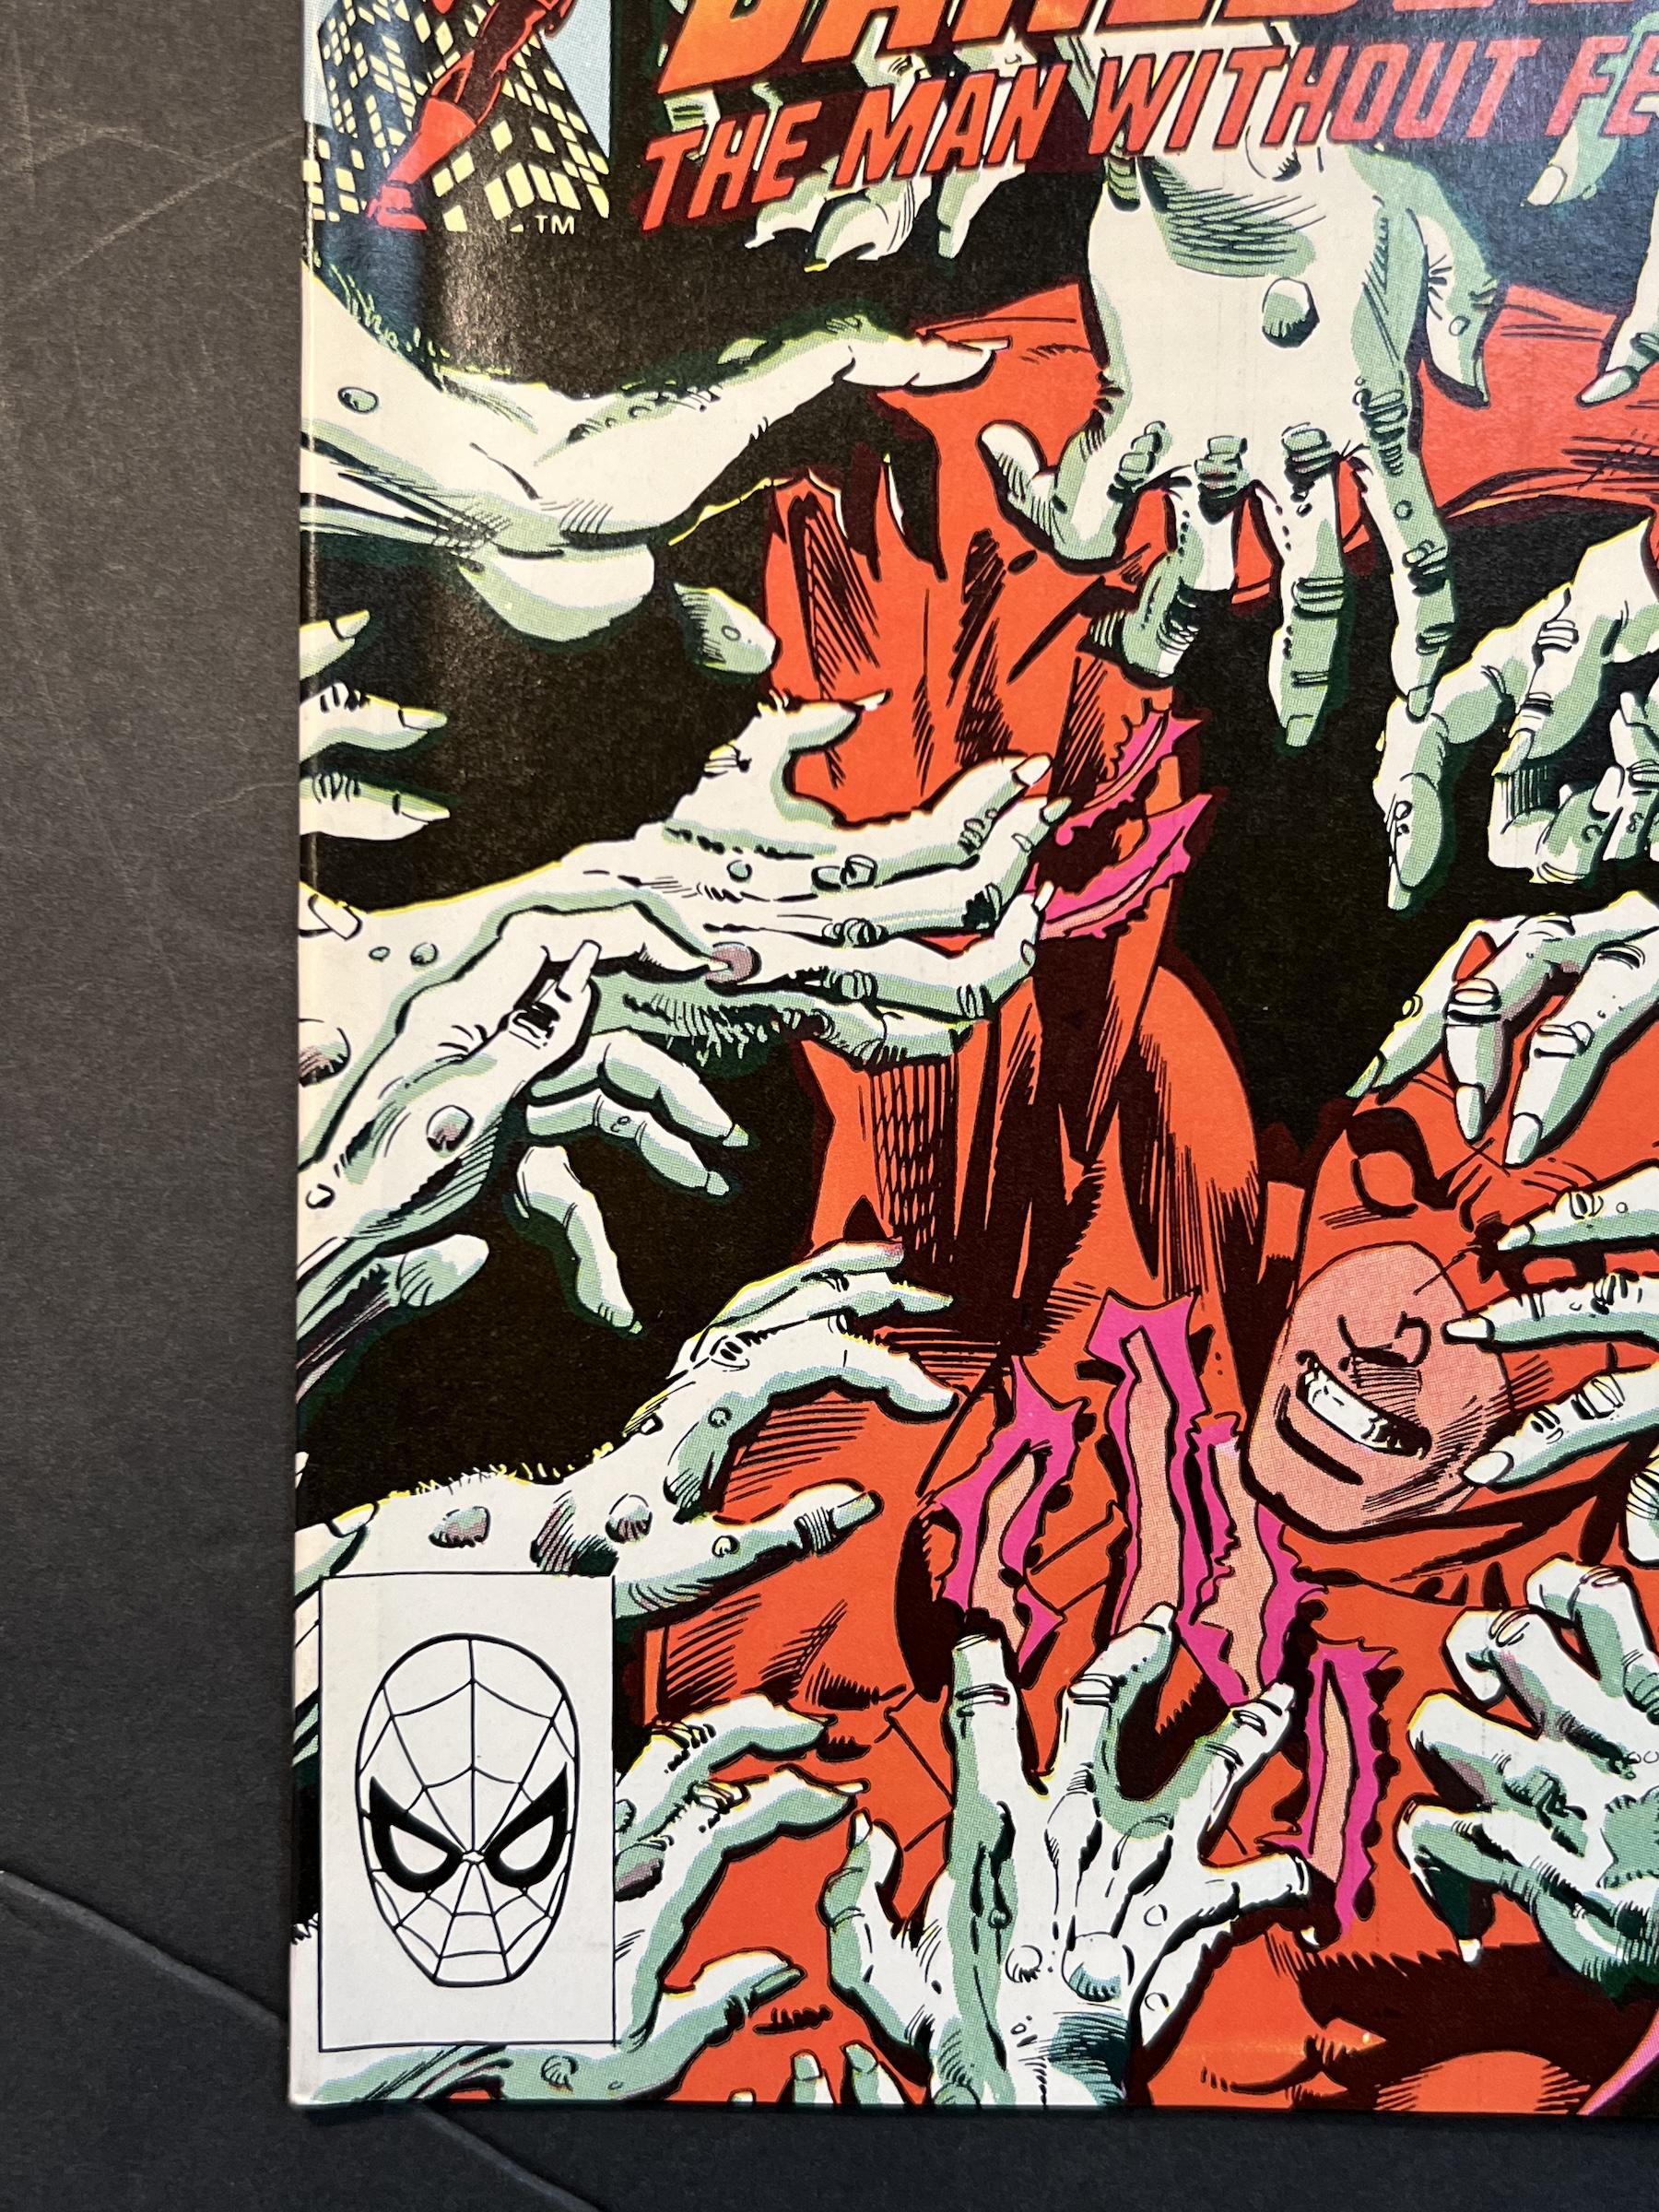 Daredevil #179 & #180 Marvel Comic Books